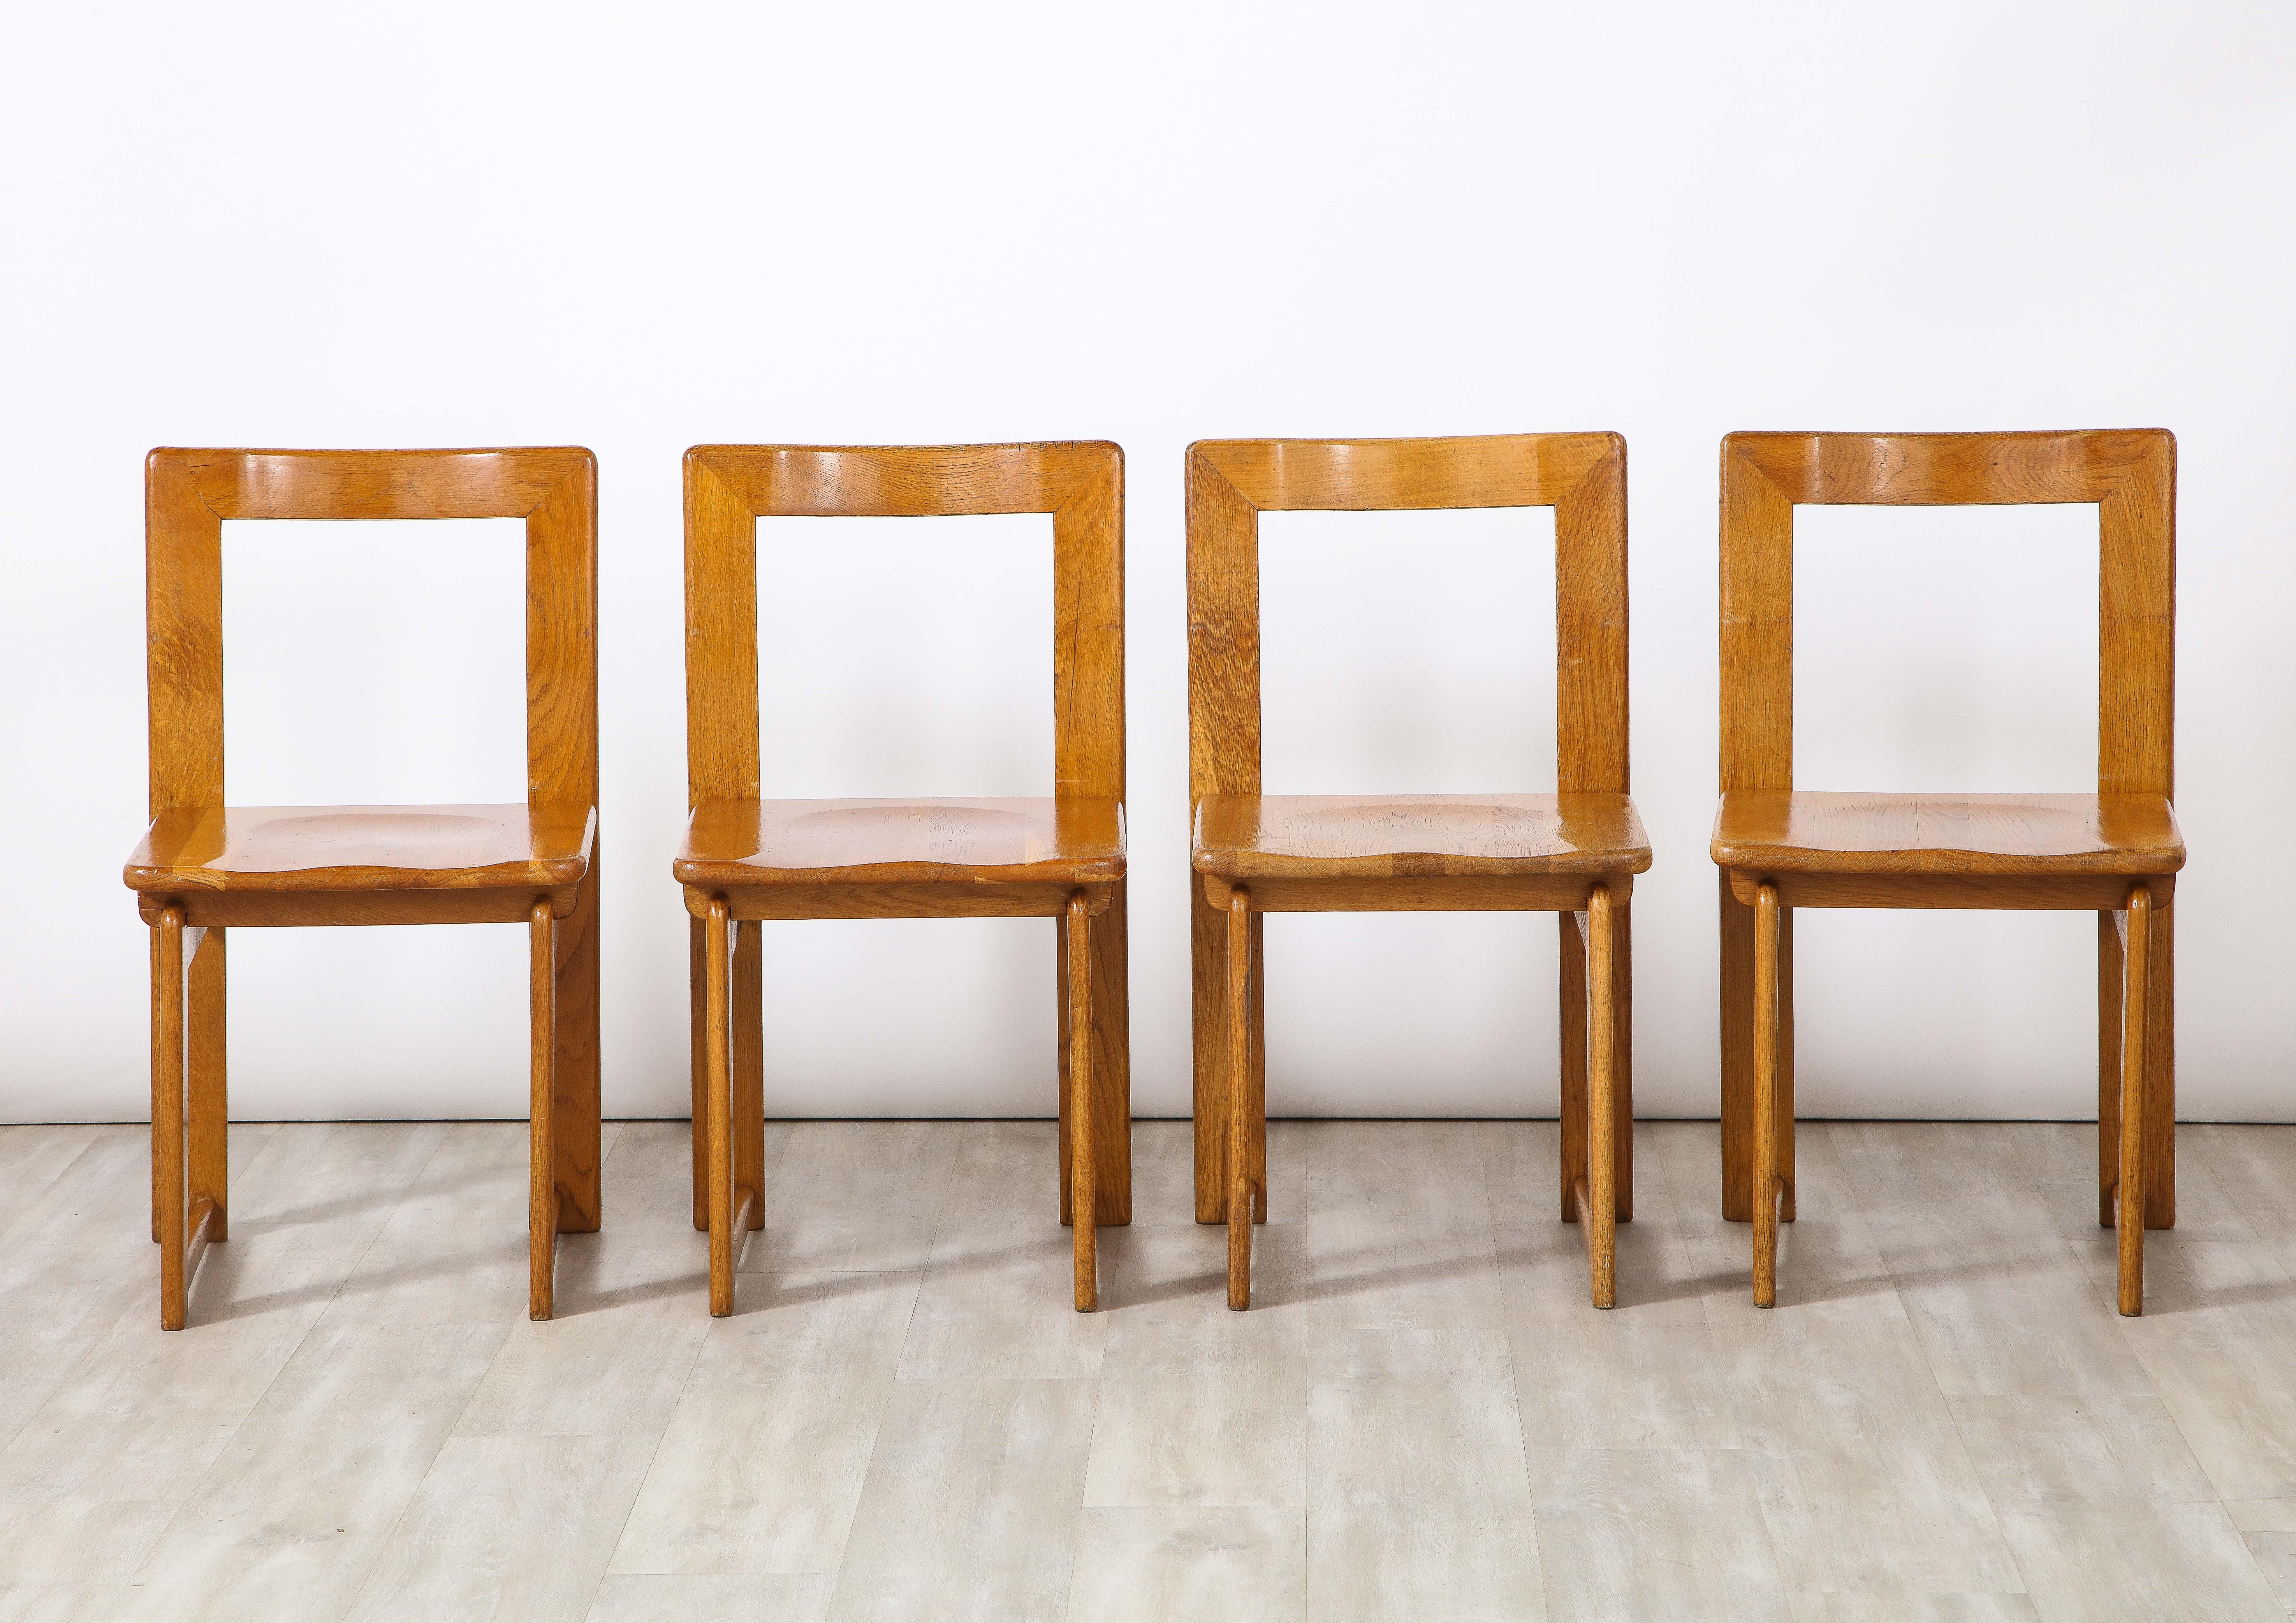 Ein charmantes Set aus vier rustikalen italienischen Eichenstühlen mit offener Rückenlehne. Die obere Rückenlehne ist elegant geschwungen und hebt die Einbuchtung der Sitzfläche hervor, die auf geraden Beinen mit ineinander greifenden Gelenken ruht.